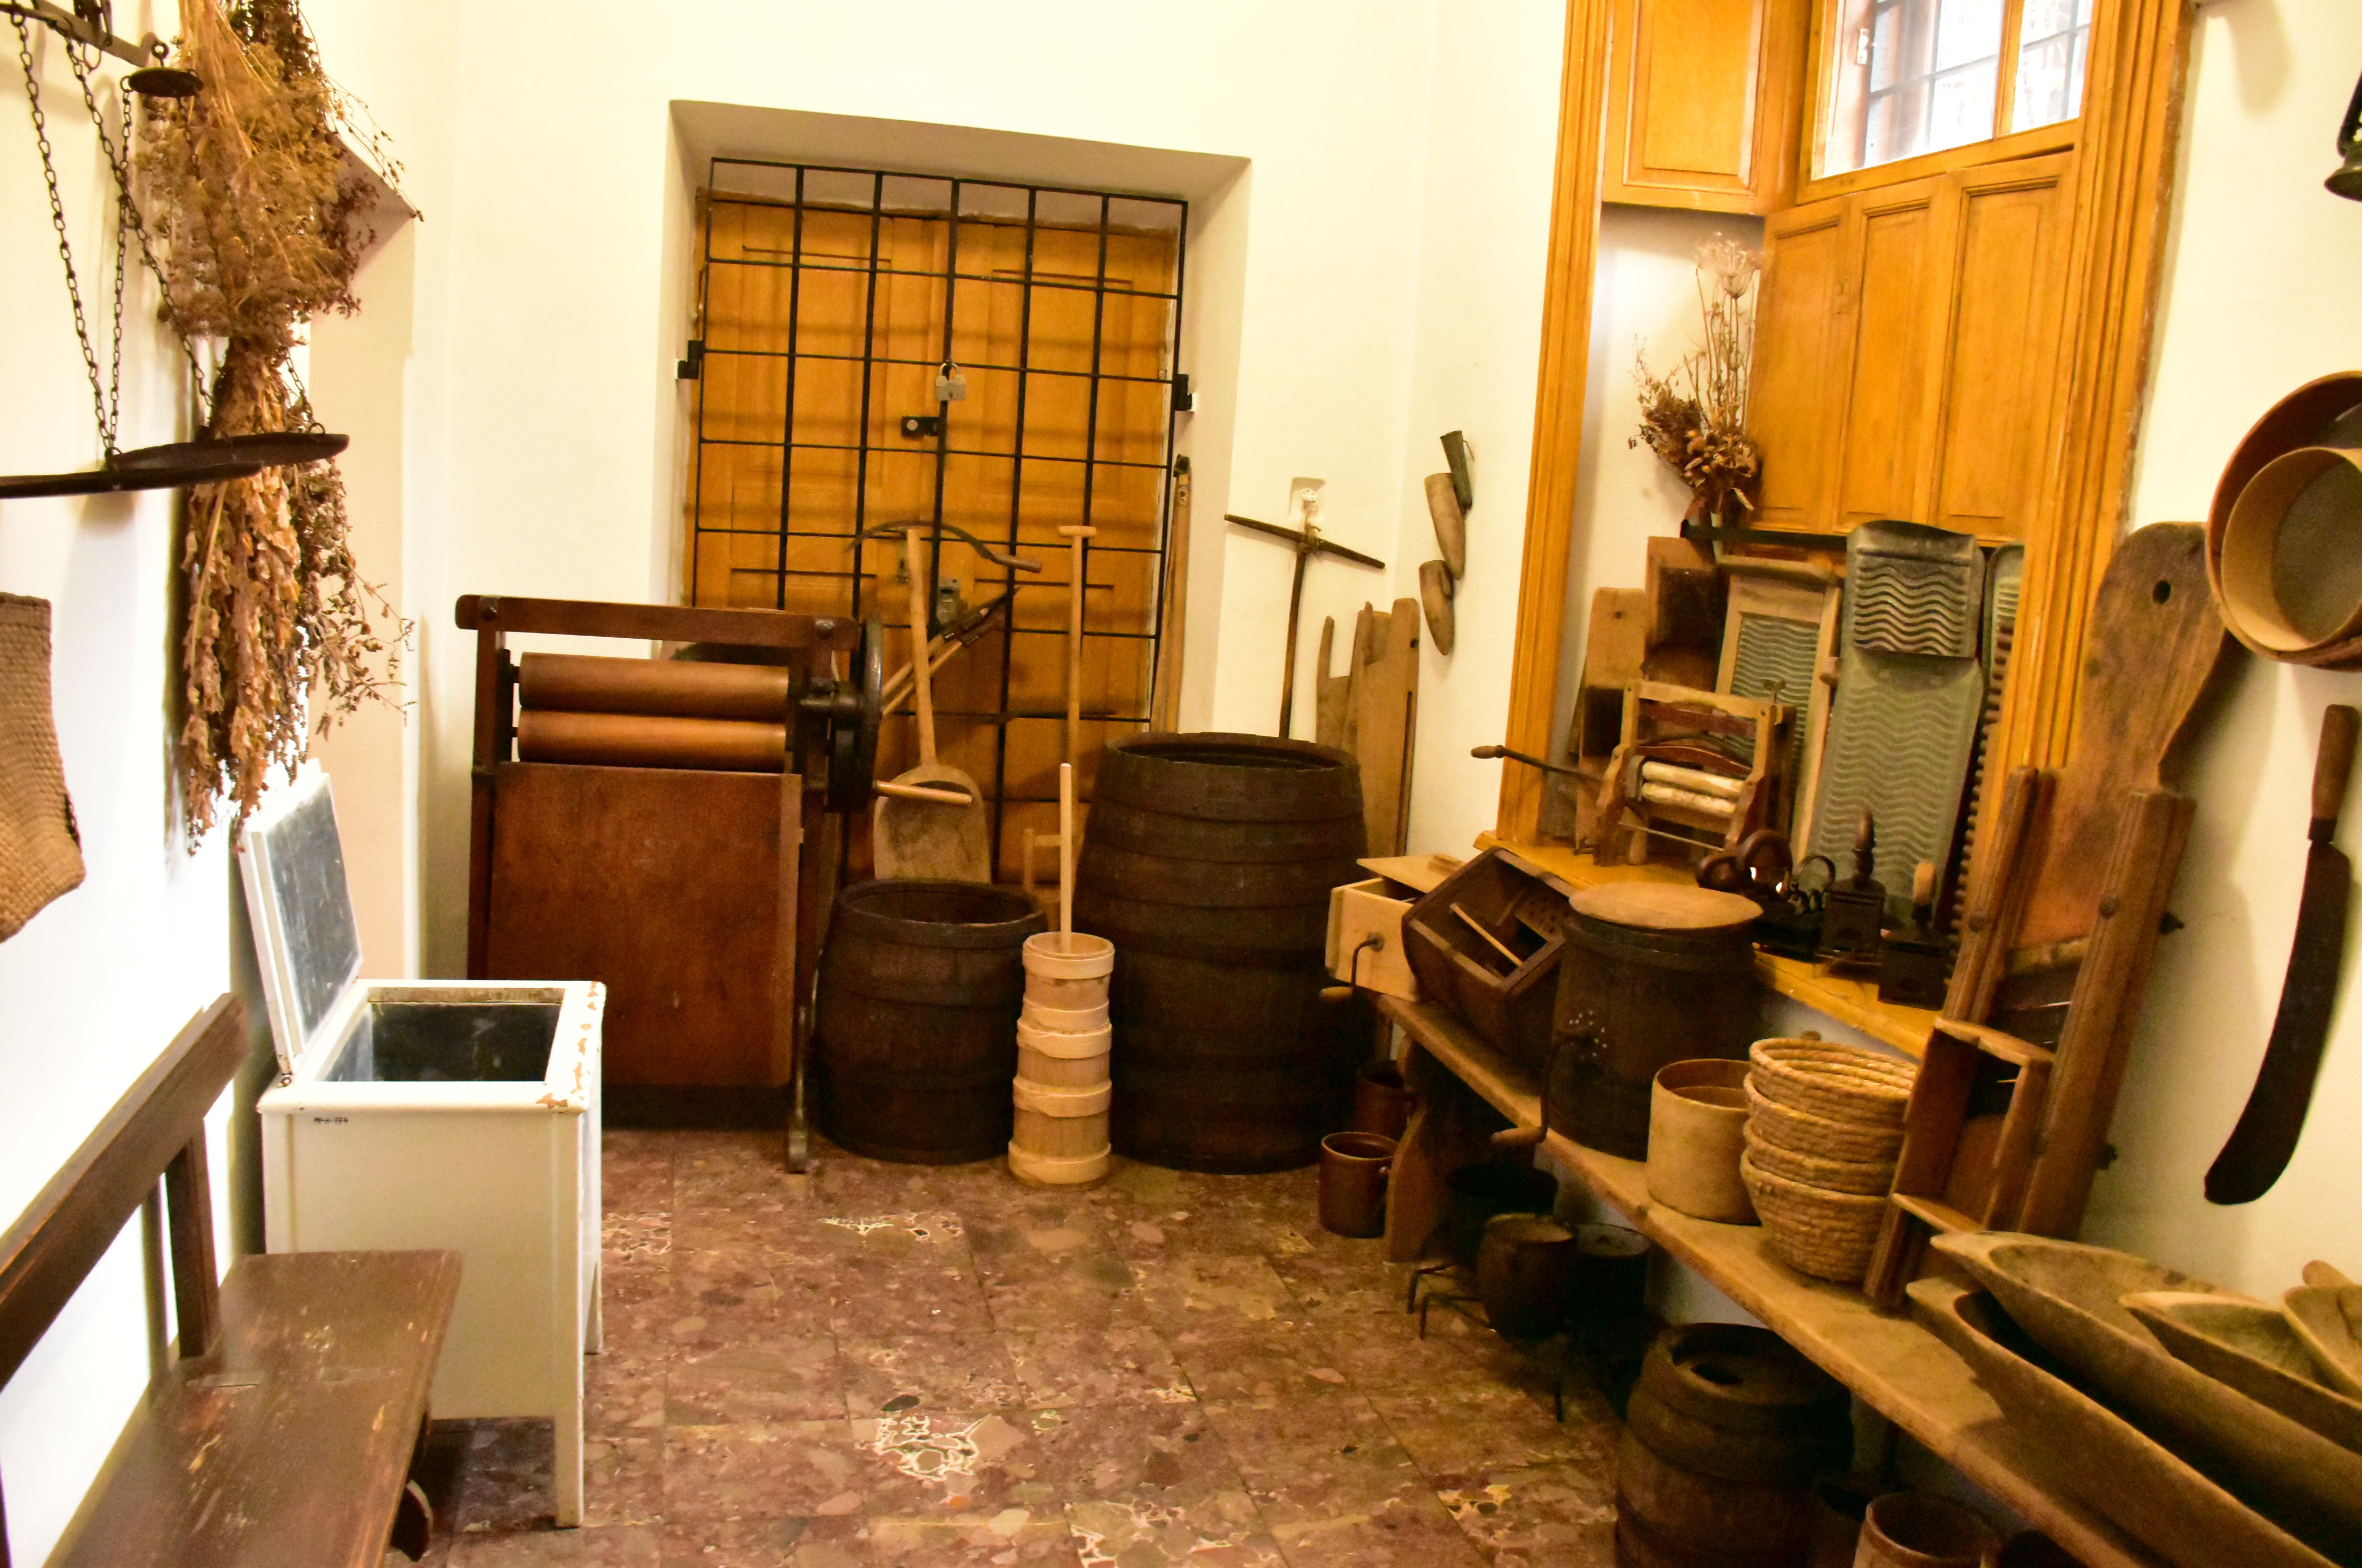 20 listopada - nasza wycieczka do Przeworska i Rzeszowa  | Wnętrze izby ze starymi przedmiotami codziennego użytku - maselniczka, tary do prania, drewniane wyżymaczki, beczki, skopki, koryta, sita, miski, itp..JPG